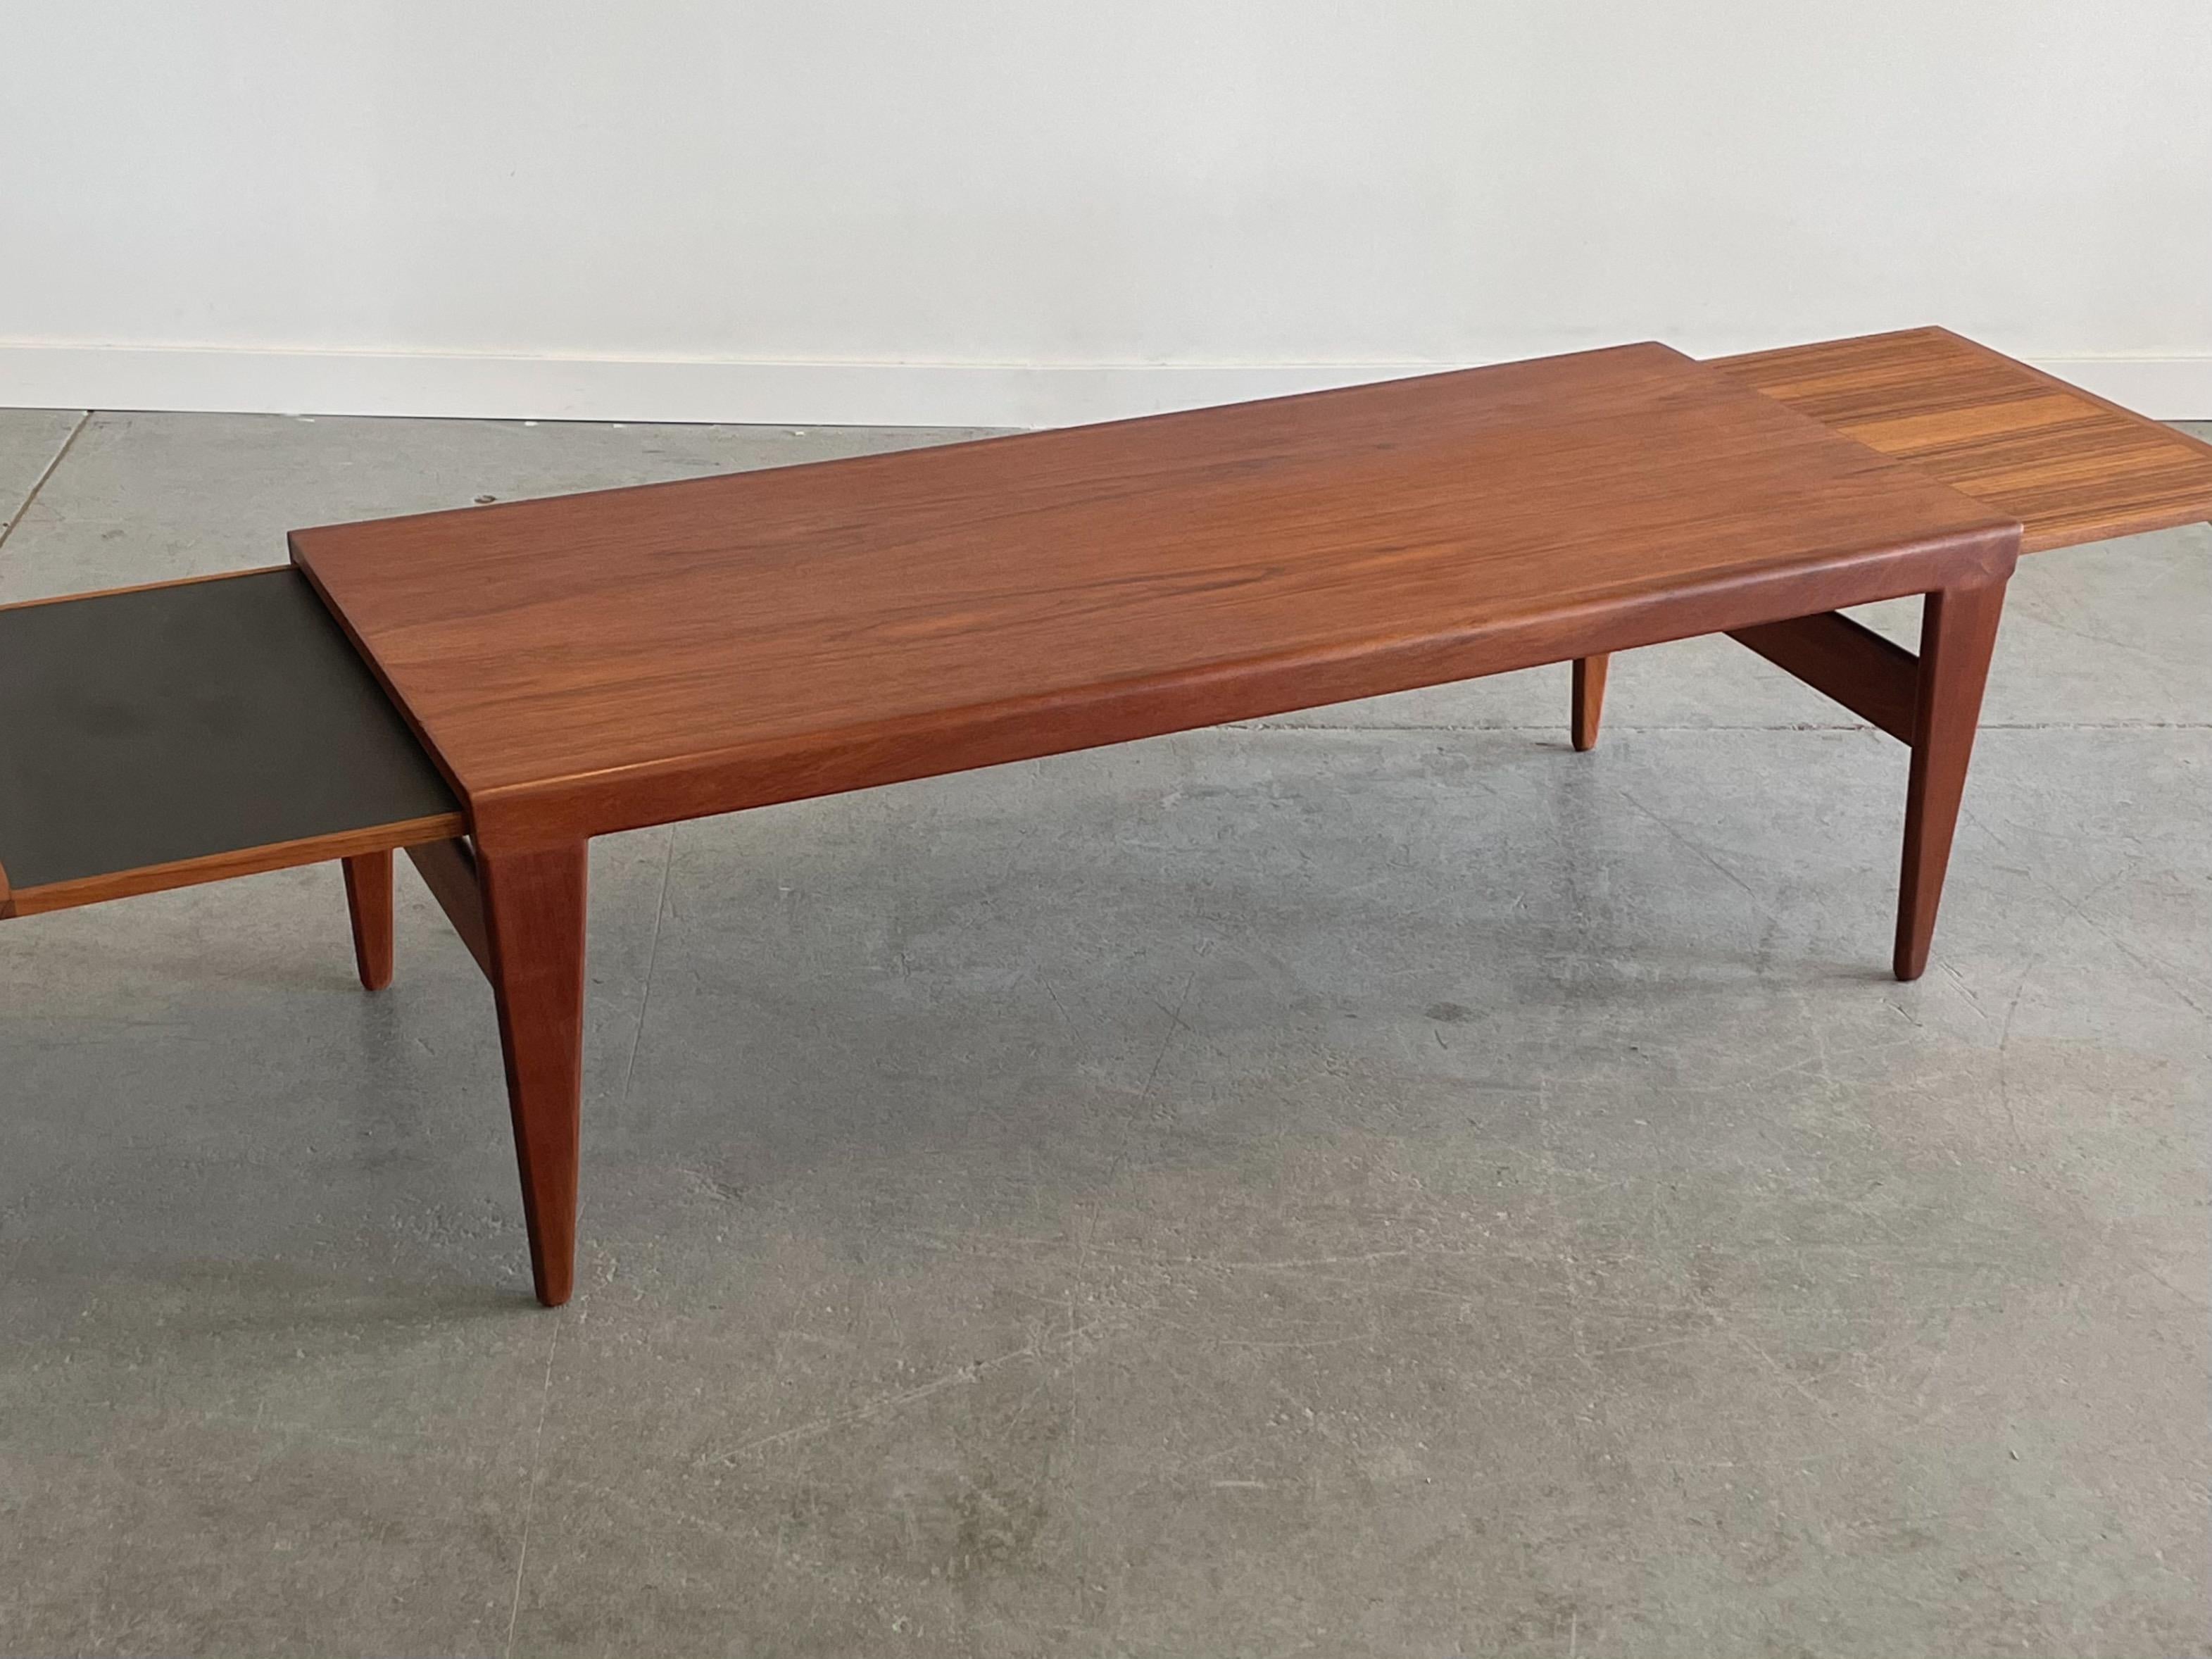 Table basse extensible en teck conçue par Illum Wikkelso pour Koefoeds, Danemark. Cette pièce présente un profil substantiel et magnifiquement sculpté avec des pieds joliment effilés. De chaque côté, il y a une extension, l'une d'entre elles étant